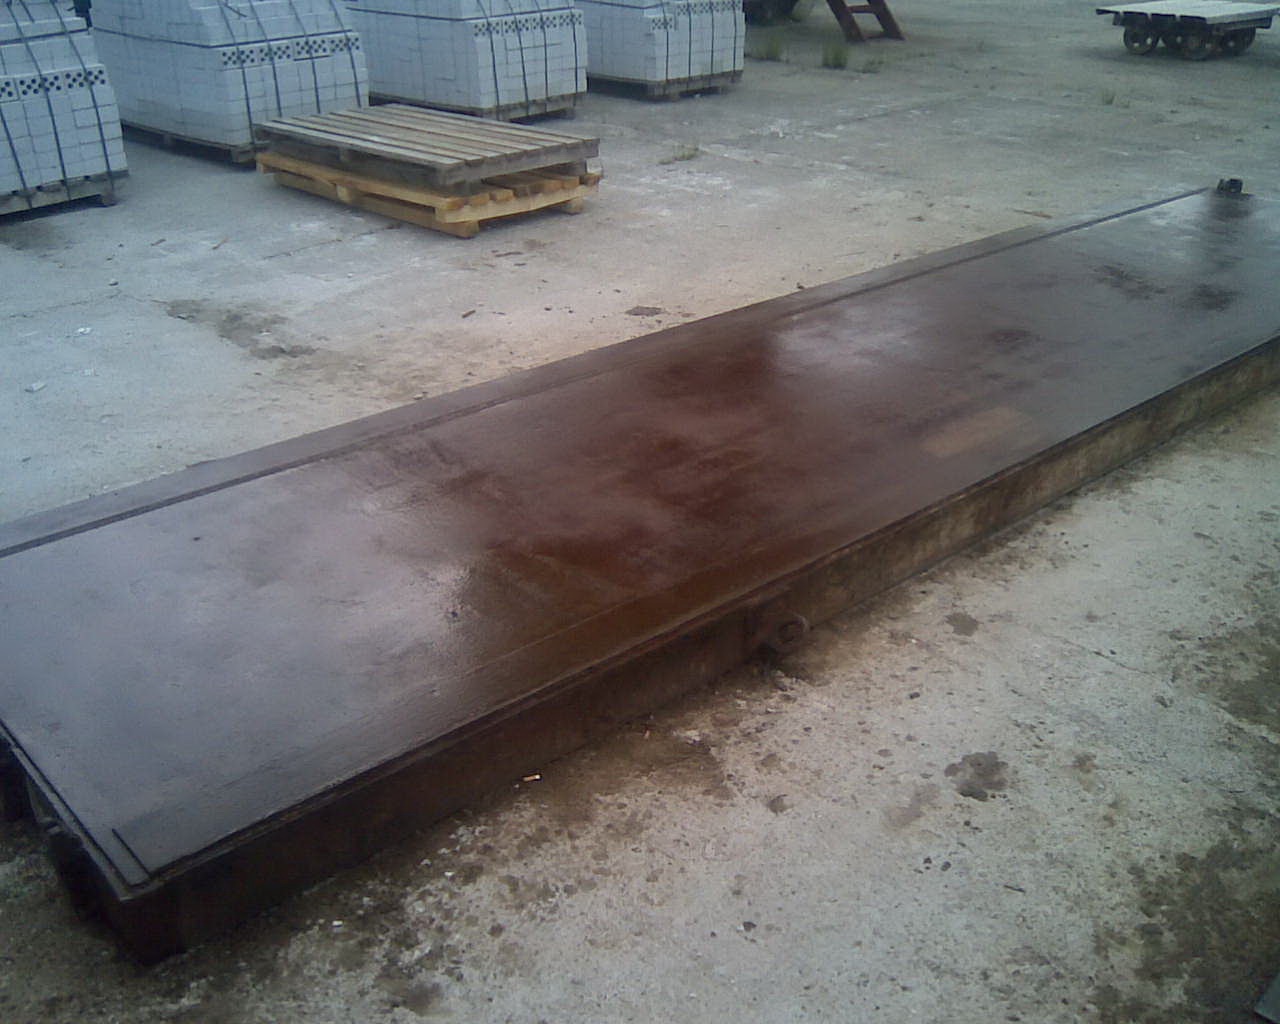 Металлоформы поддонов плит пустотного настила, размер - 1,2 х 6,3 м, вес - 2100 кг, количество - 20 штук. Цена 35000 руб. за тонну с доставкой.